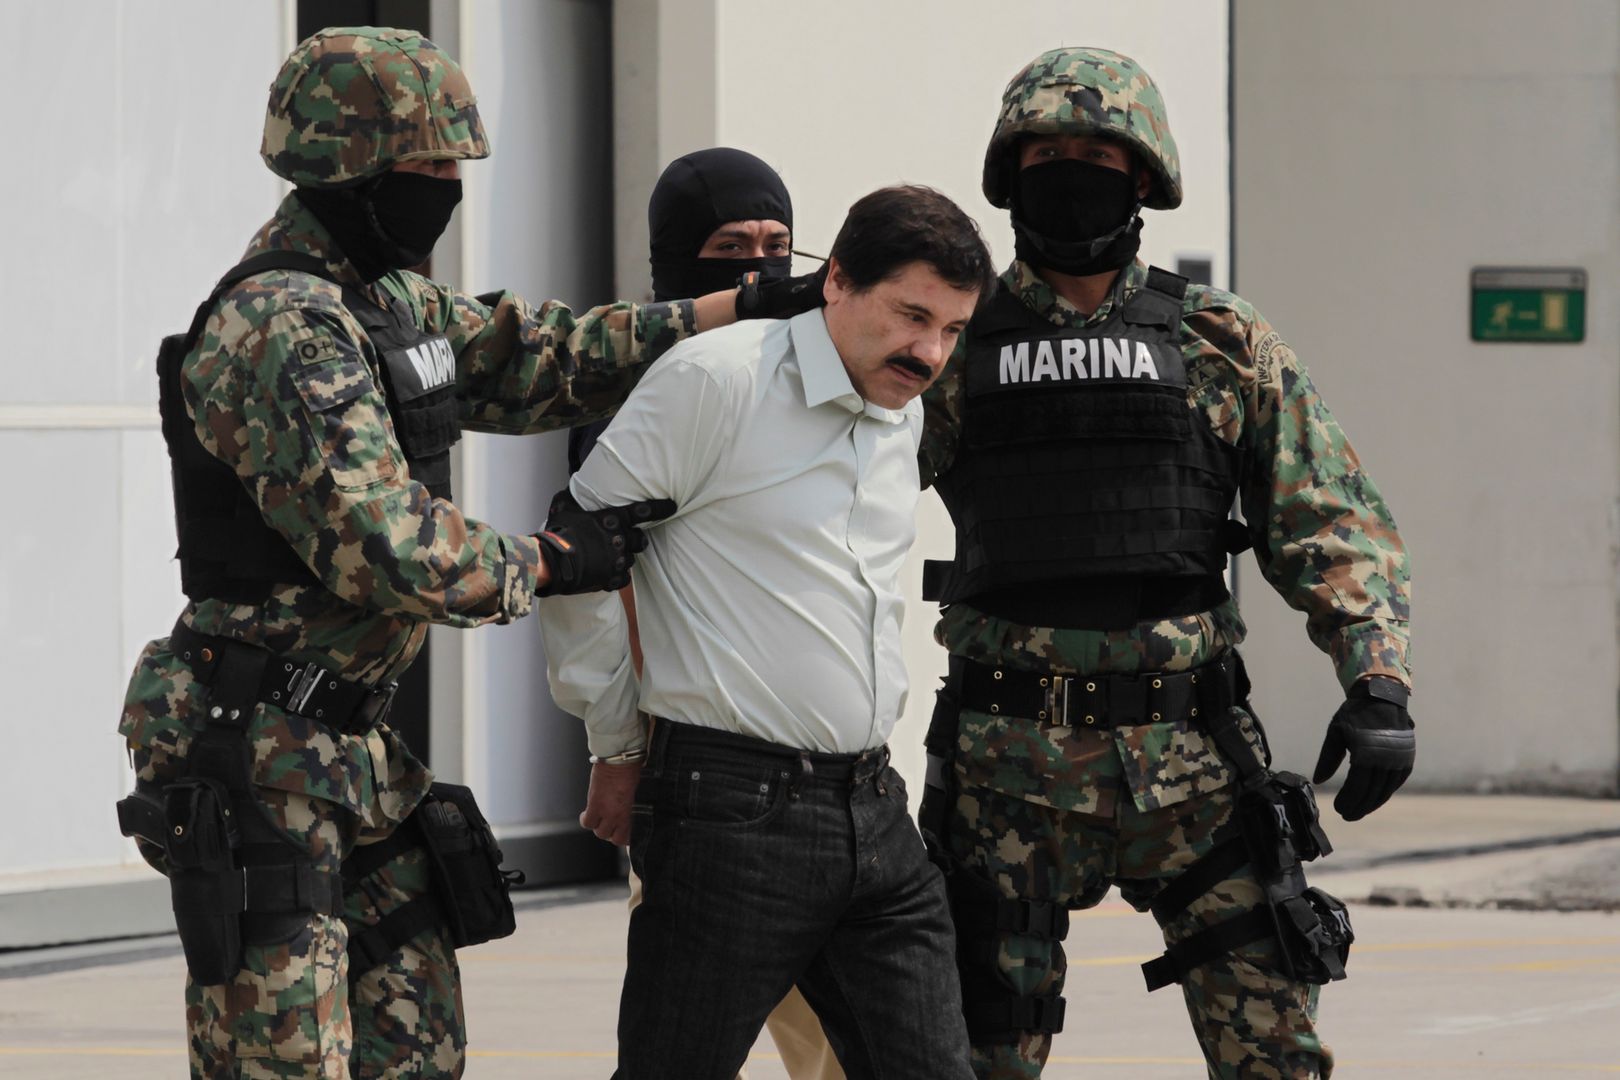 El Chapo (Joaquin Guzman) skazany w USA. Bez litości dla króla narkotyków